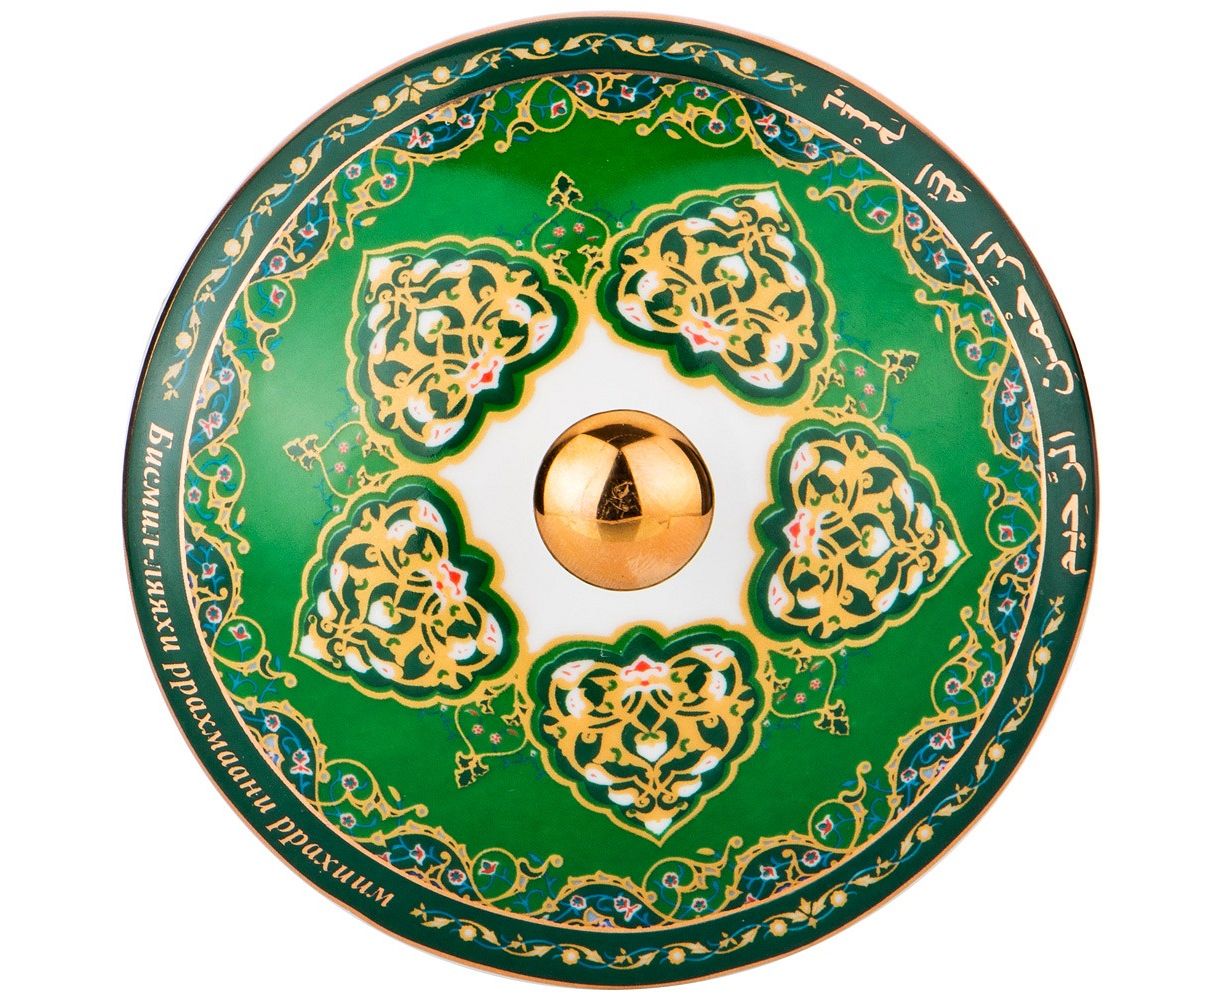 Мусульманская посуда. Lefard посуда 99 имен Аллаха. Мусульманские тарелки. Миски мусульманские. Посуда с мусульманской символикой.